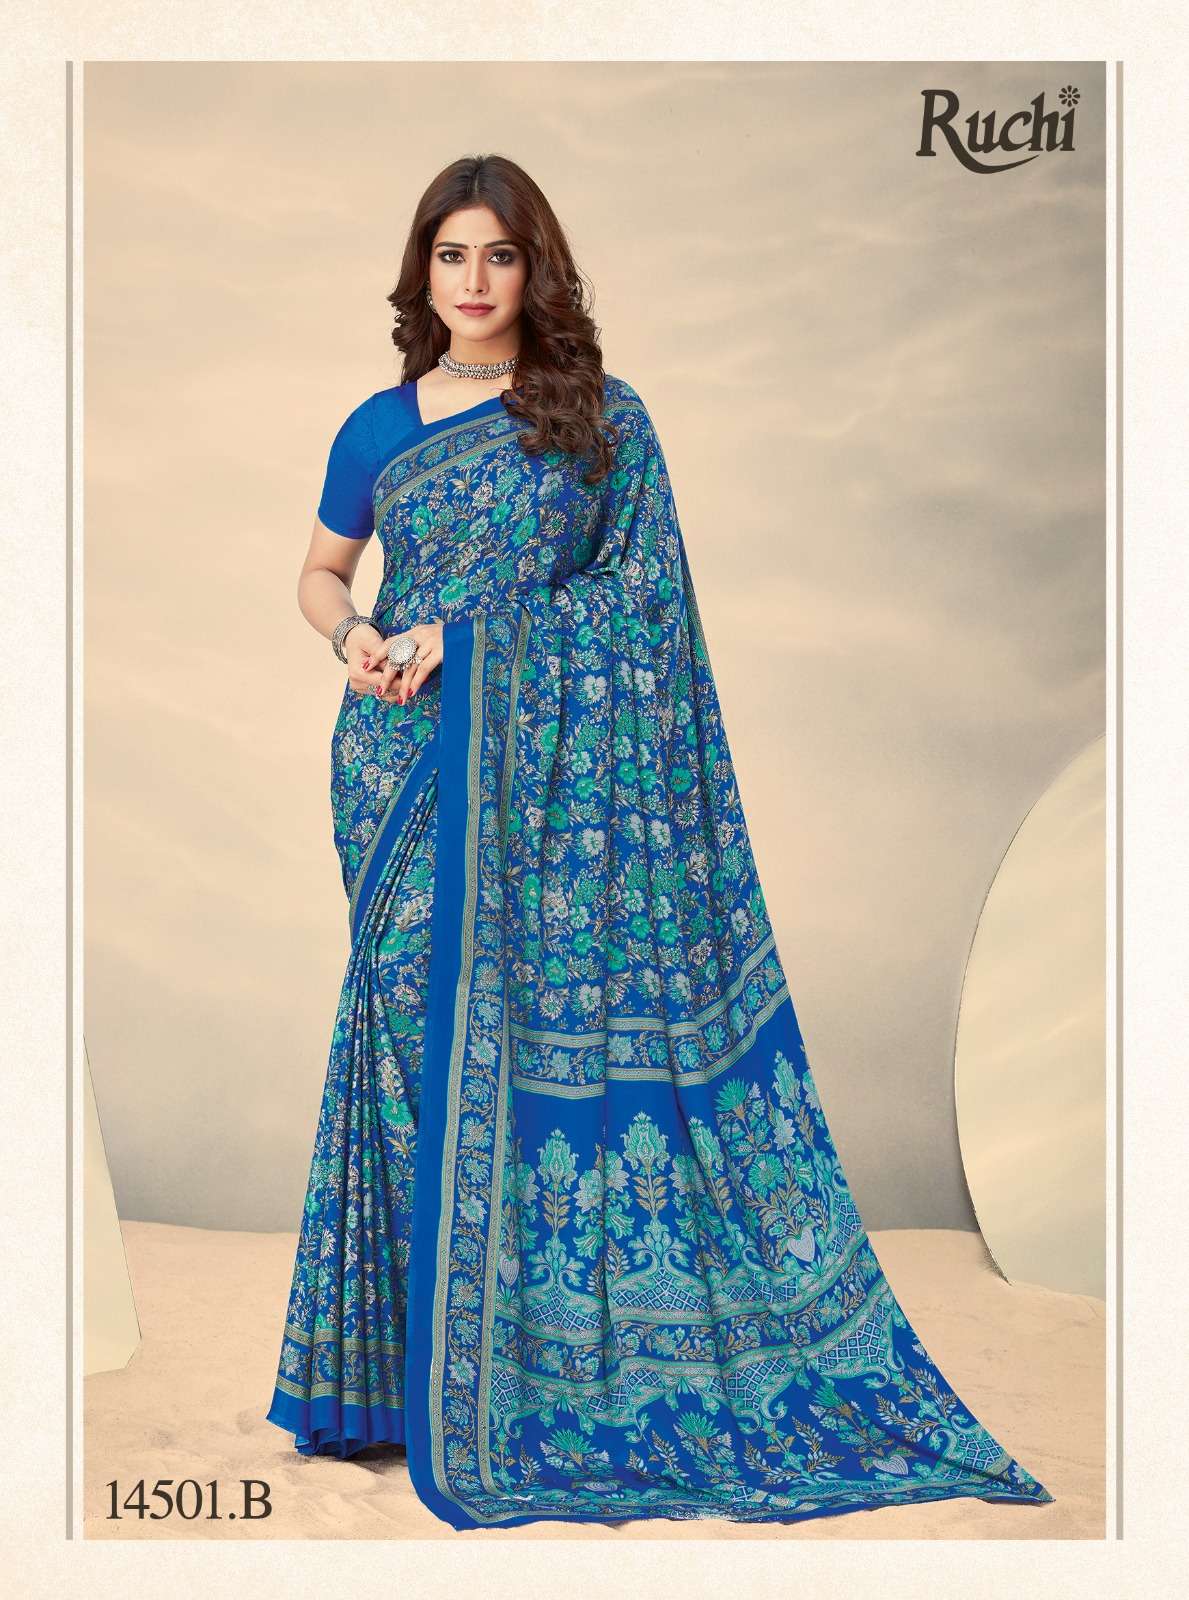 ruchi sarees lanched vivanta silk hits 10 printed crape silk sarees